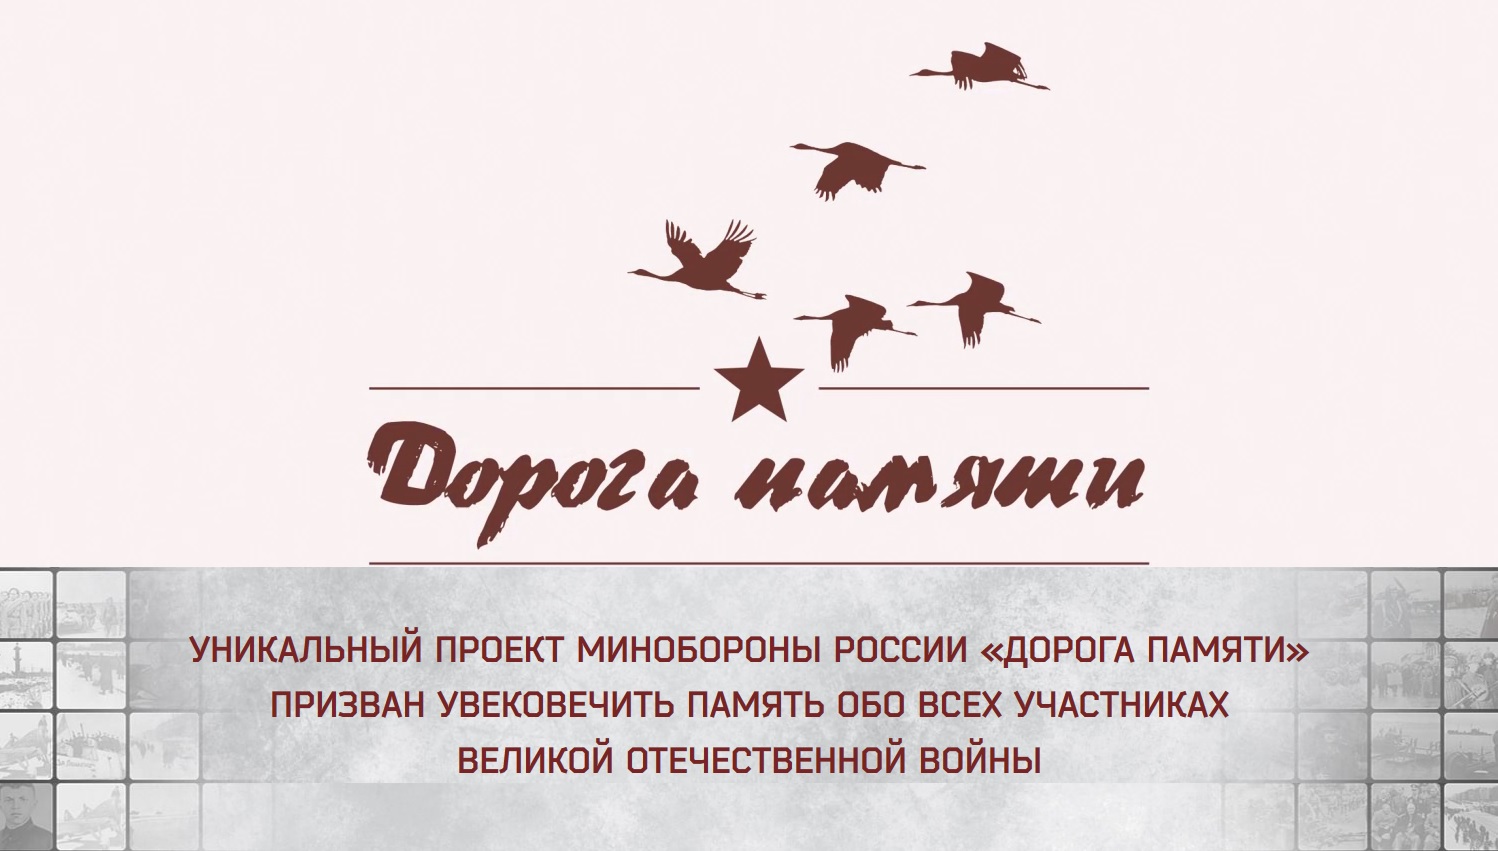 Эмблема Всероссийского проекта "Дорога памяти"